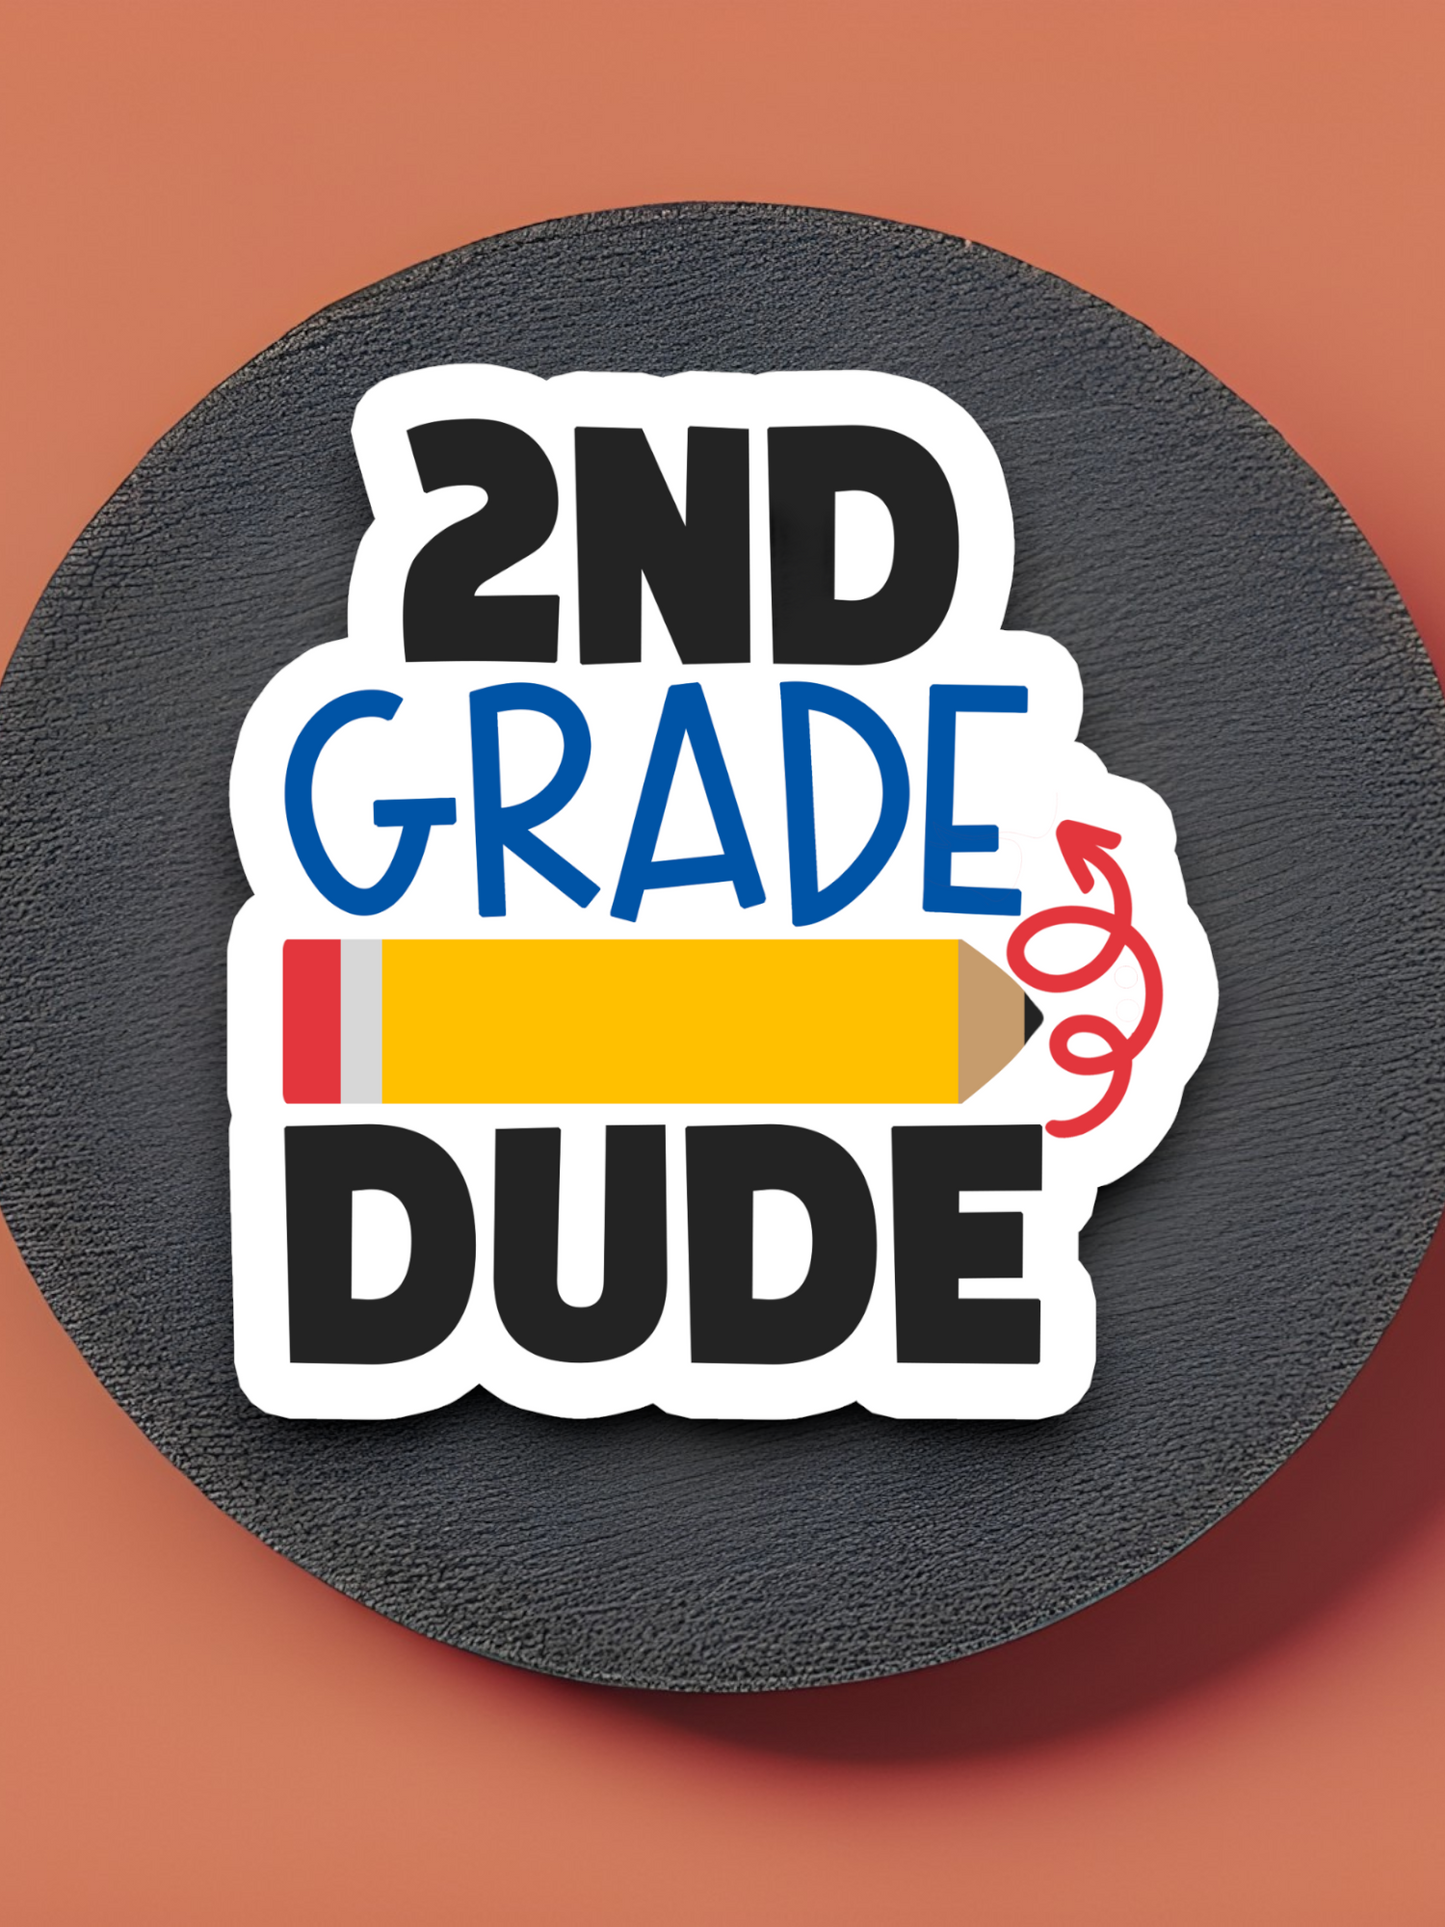 2nd Grade Dude Version 1 - School Sticker